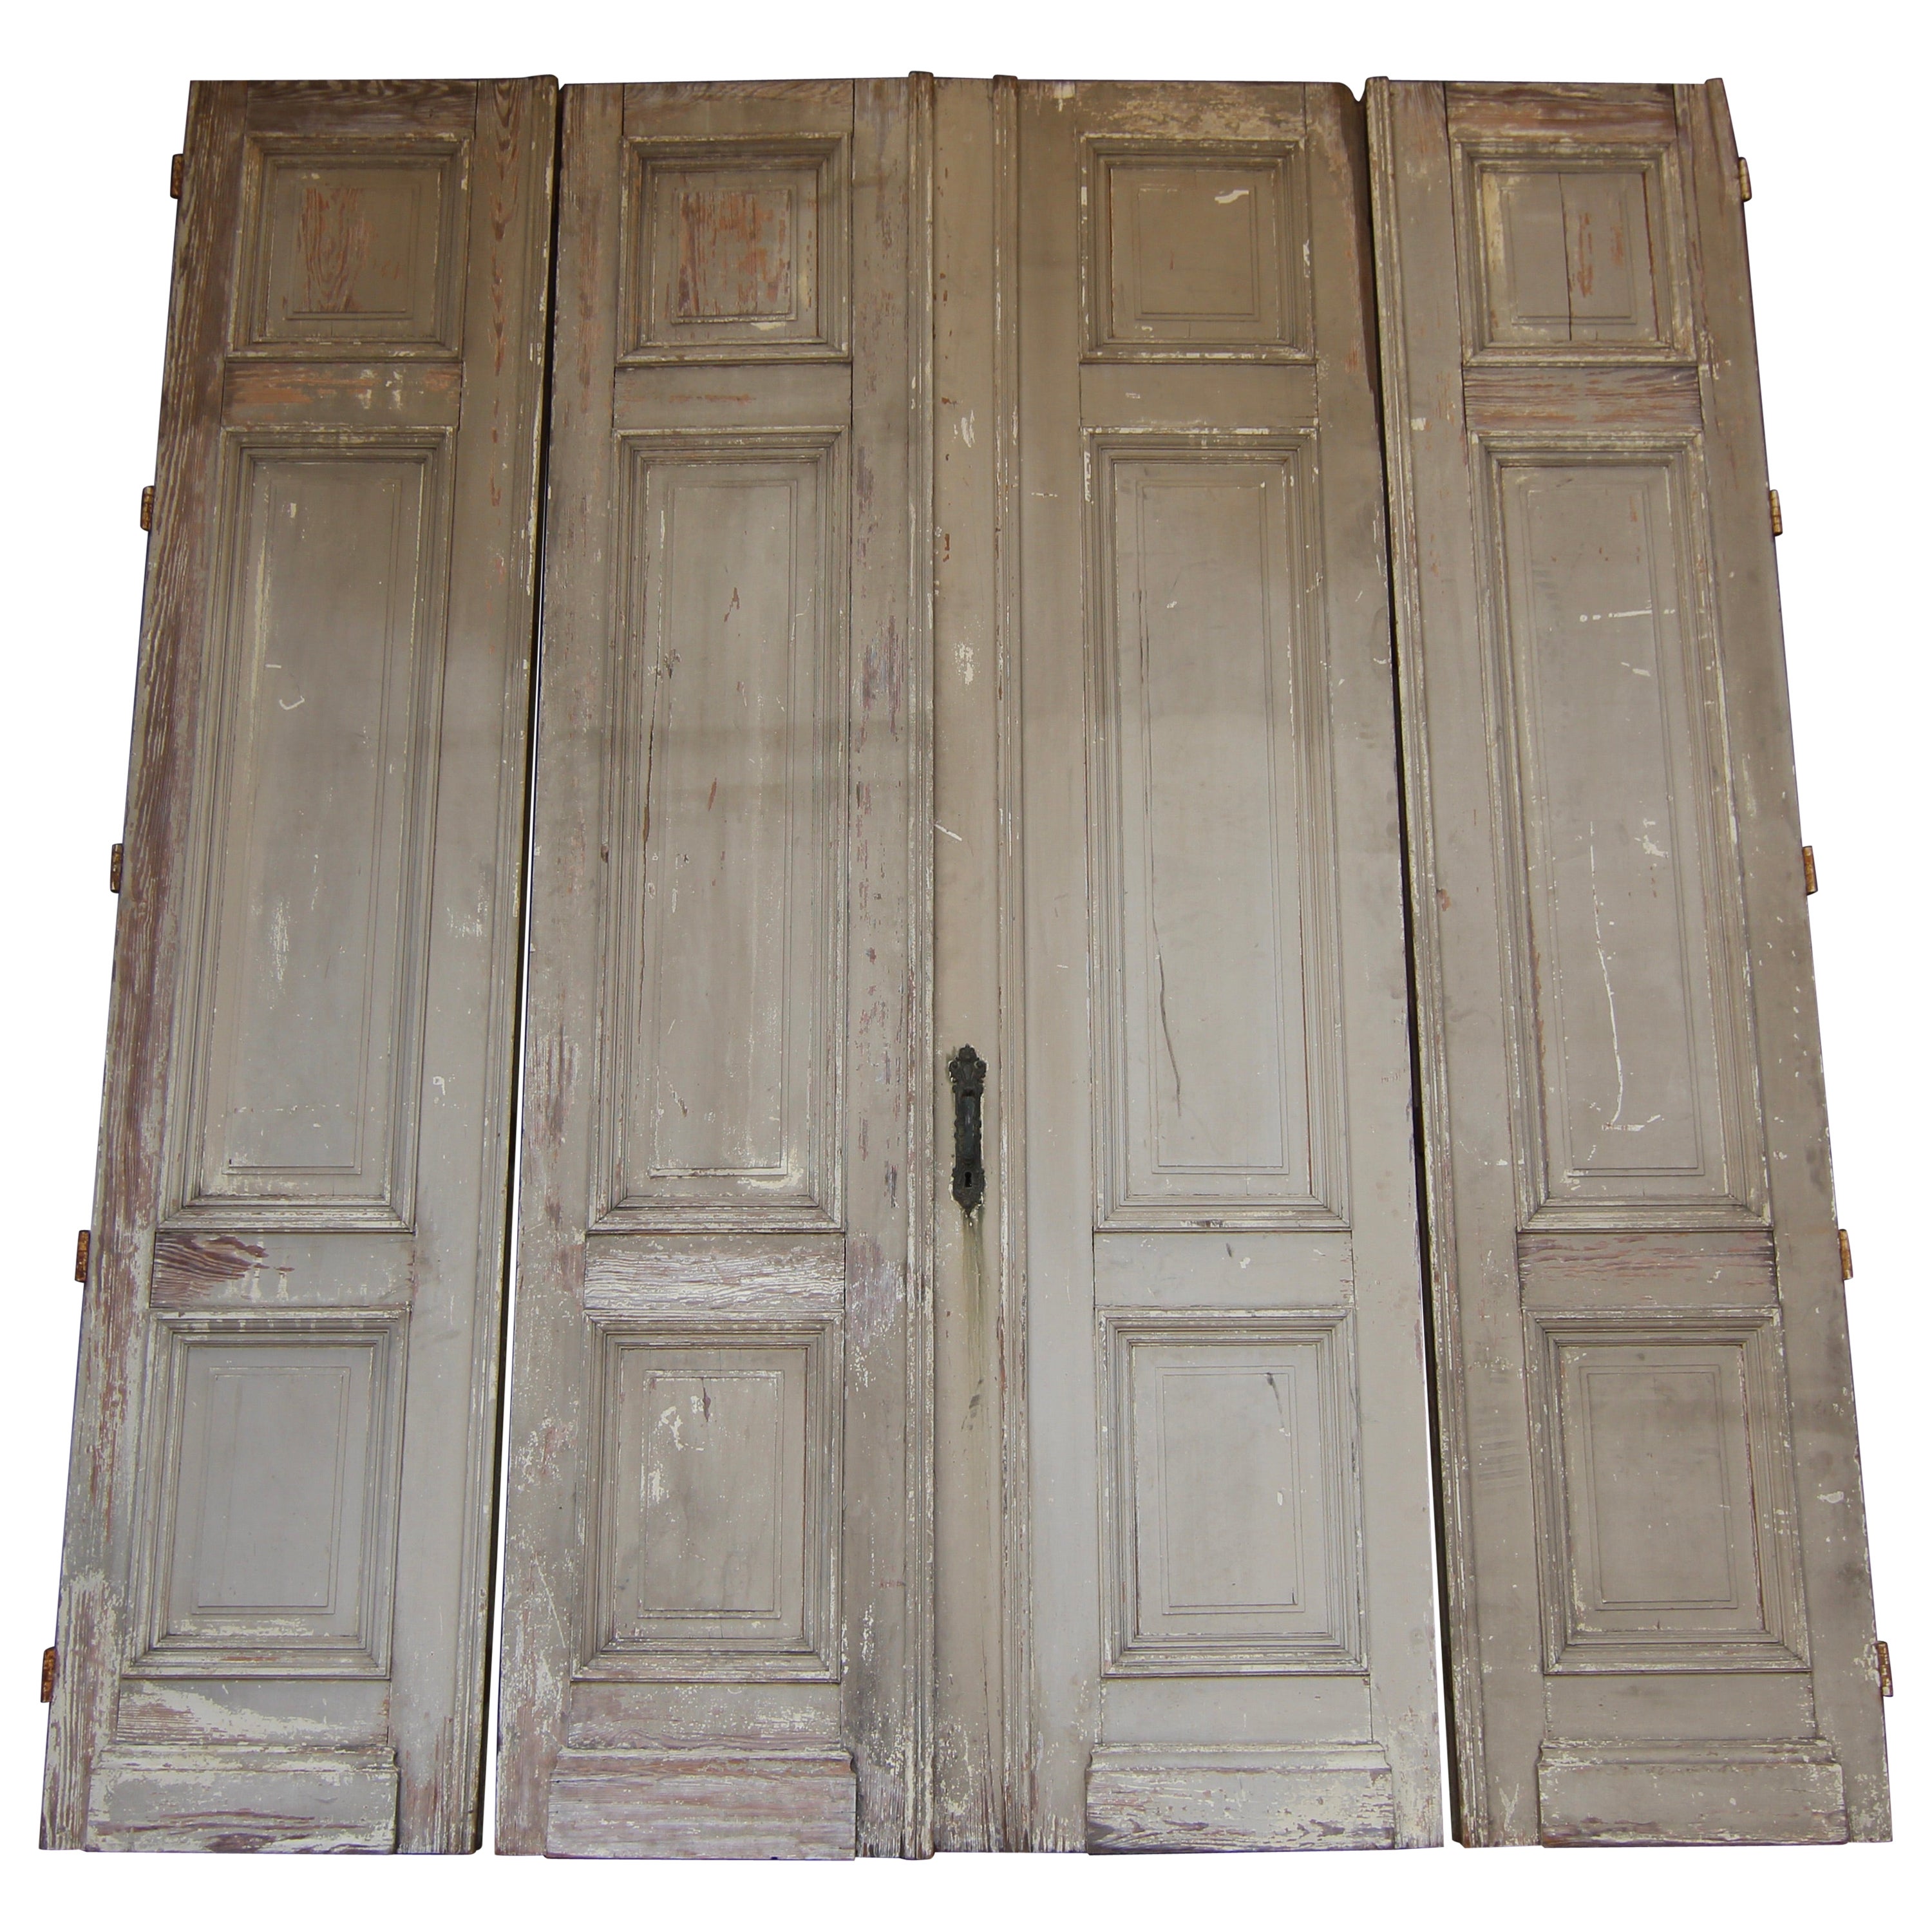 Doppeltür aus dem frühen 20. Jahrhundert, bestehend aus 4 Türen